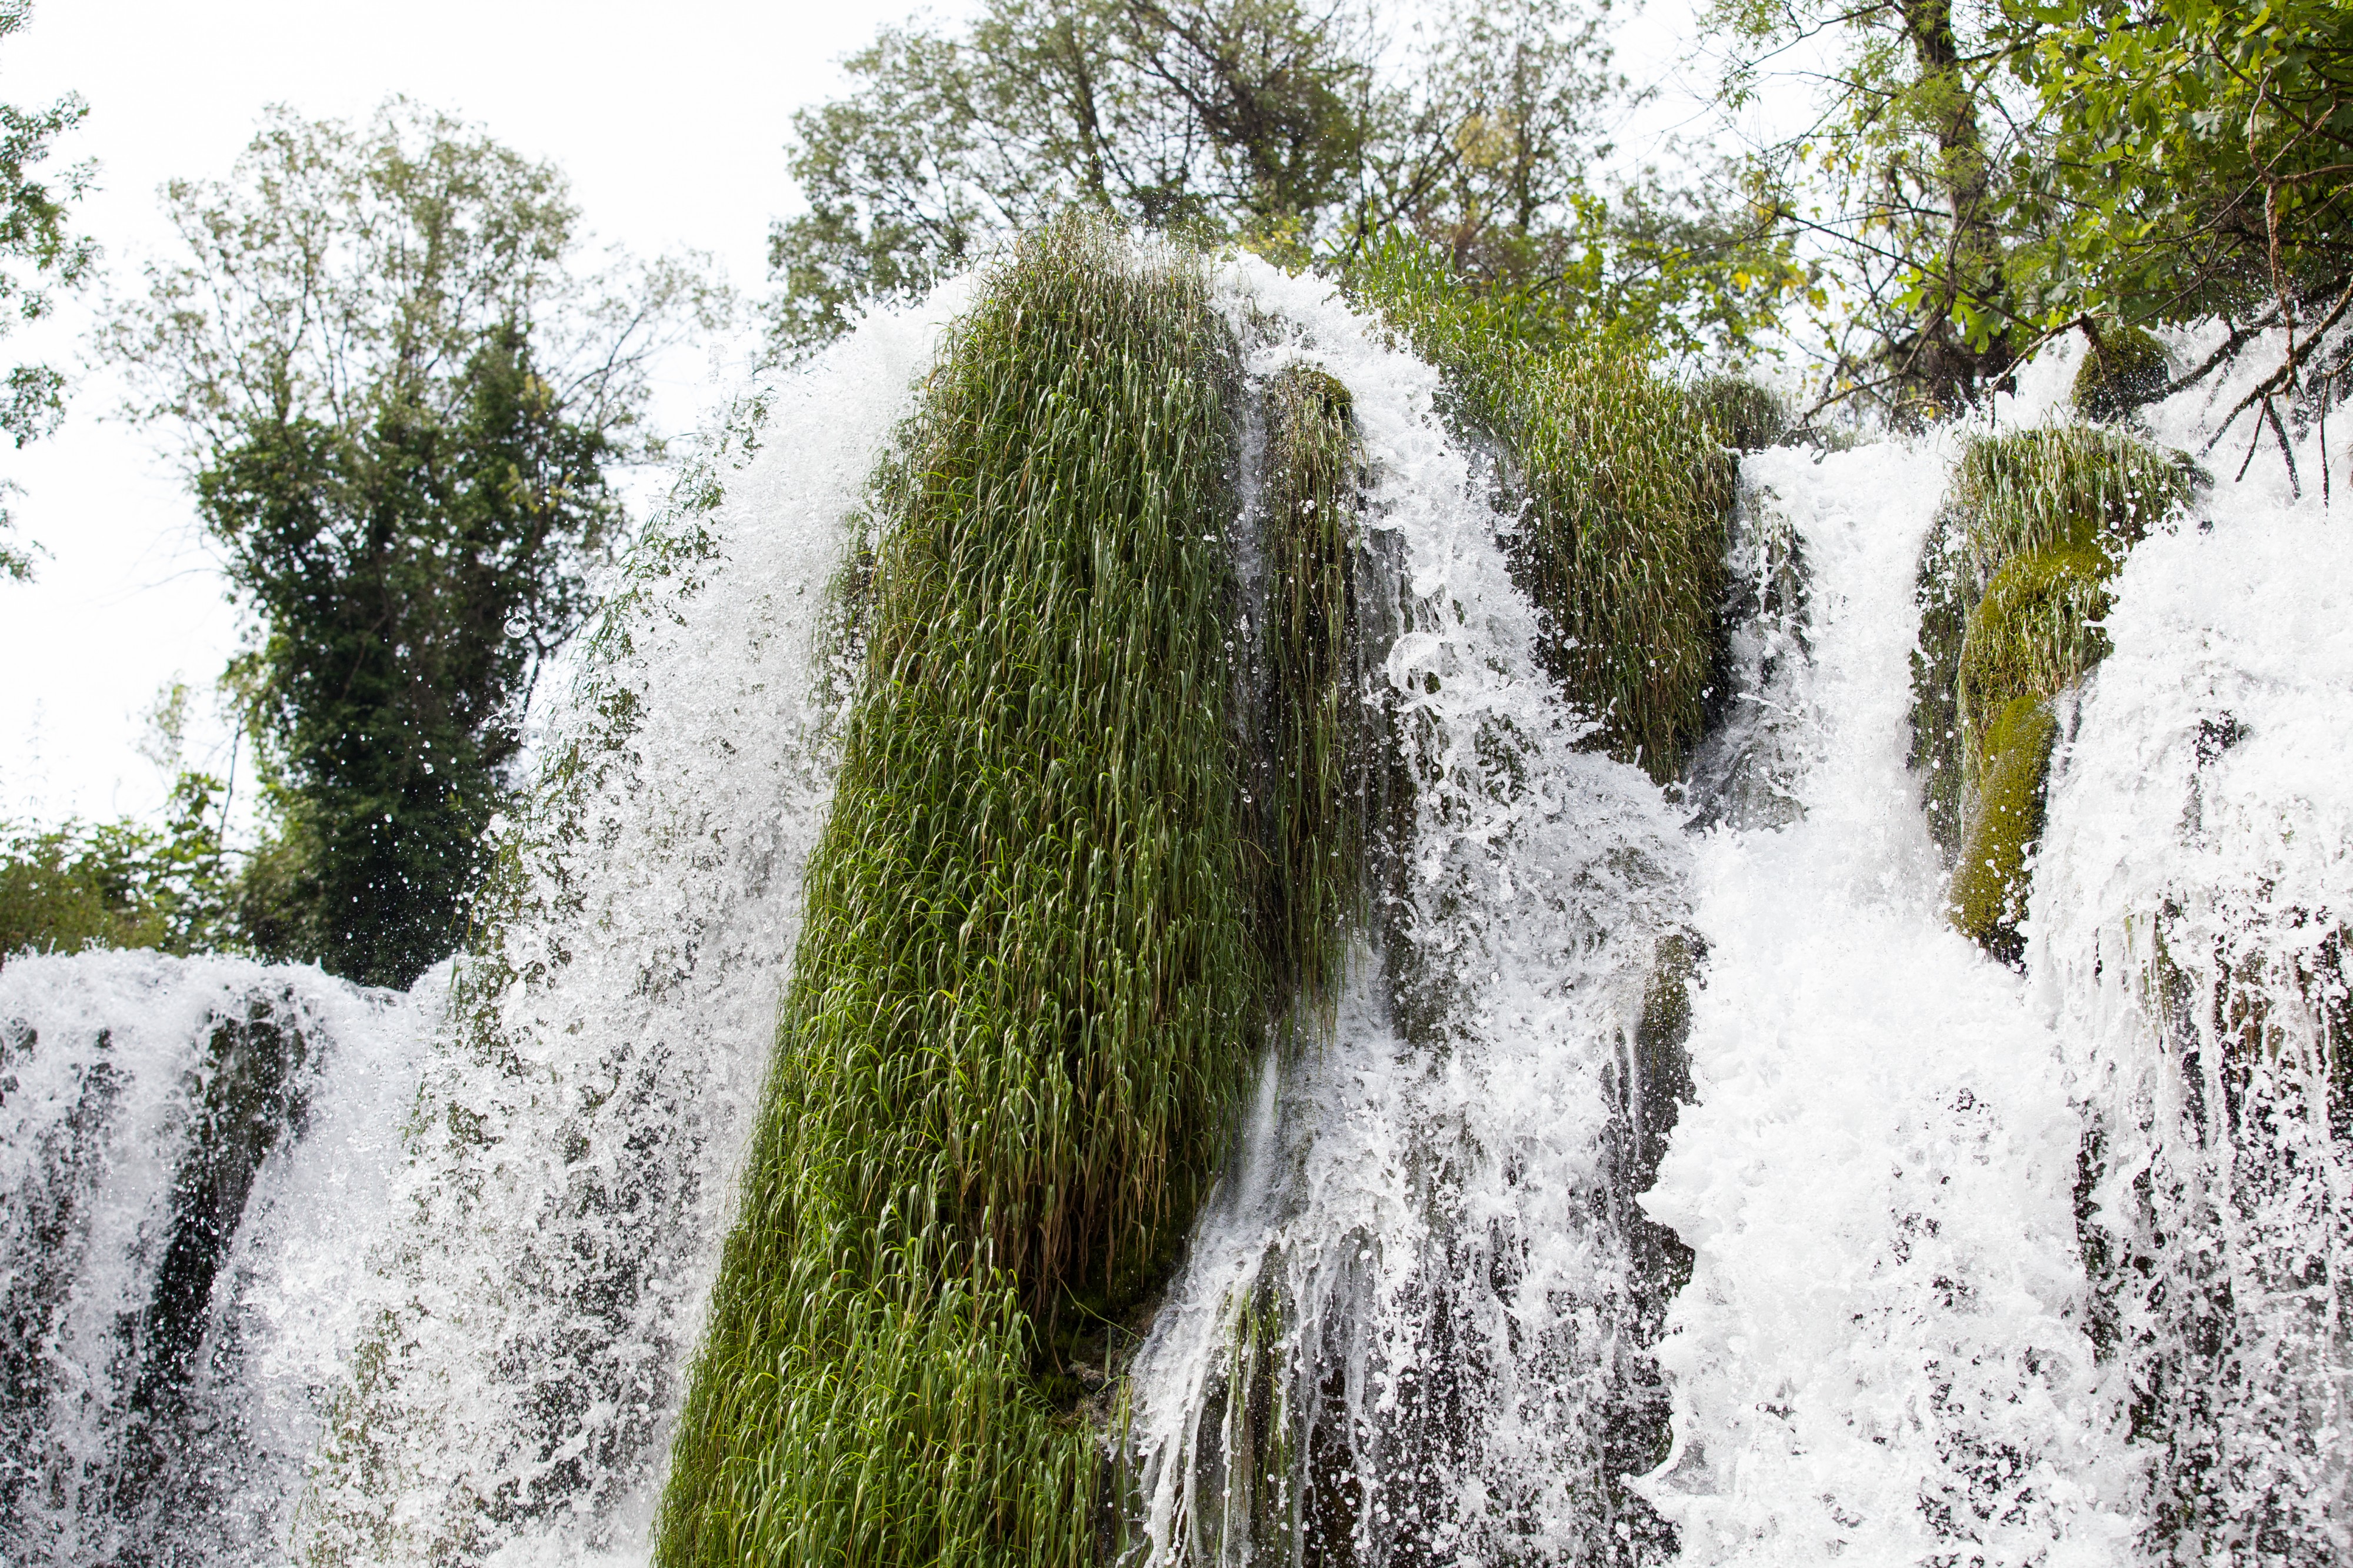 Kravice waterfall near Medjugorje, Bosnia, in July 2014, picture 2